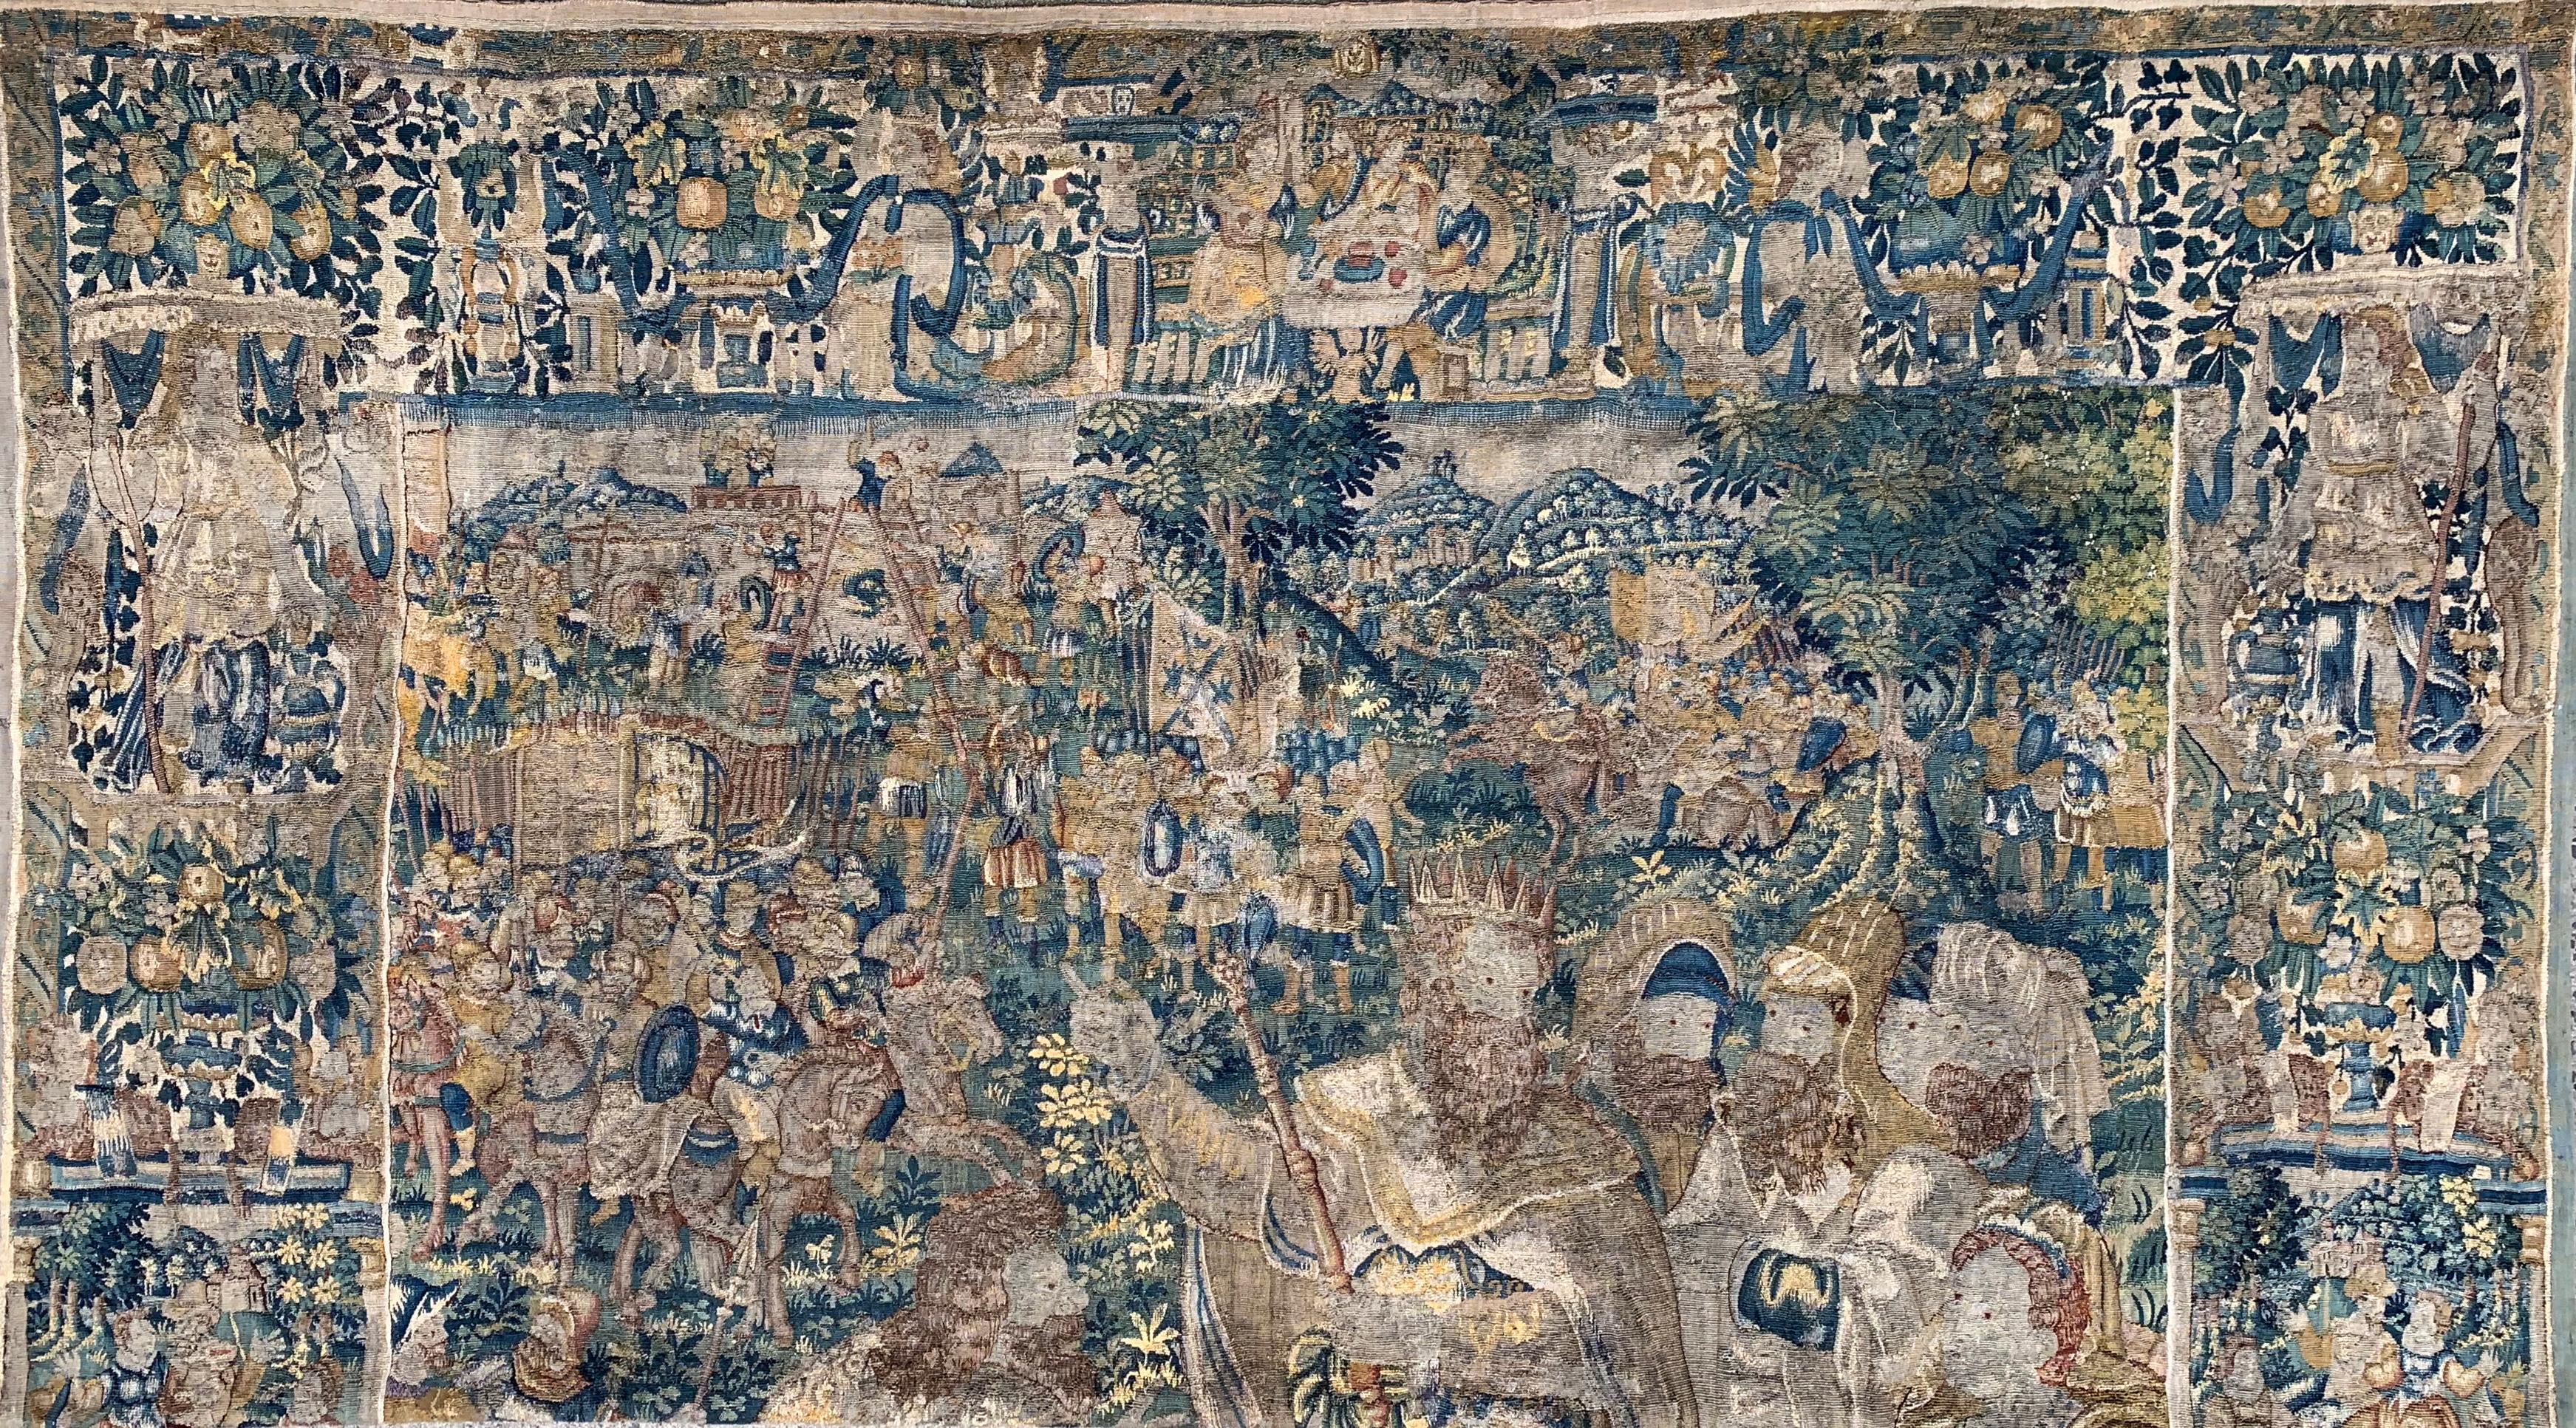 Une magnifique tapisserie biblique en laine et en soie probablement réalisée dans le centre de tissage flamand d'Audenarde. Avec une histoire de production de tapisseries remontant à 1368, la ville a créé certaines des plus belles tapisseries de